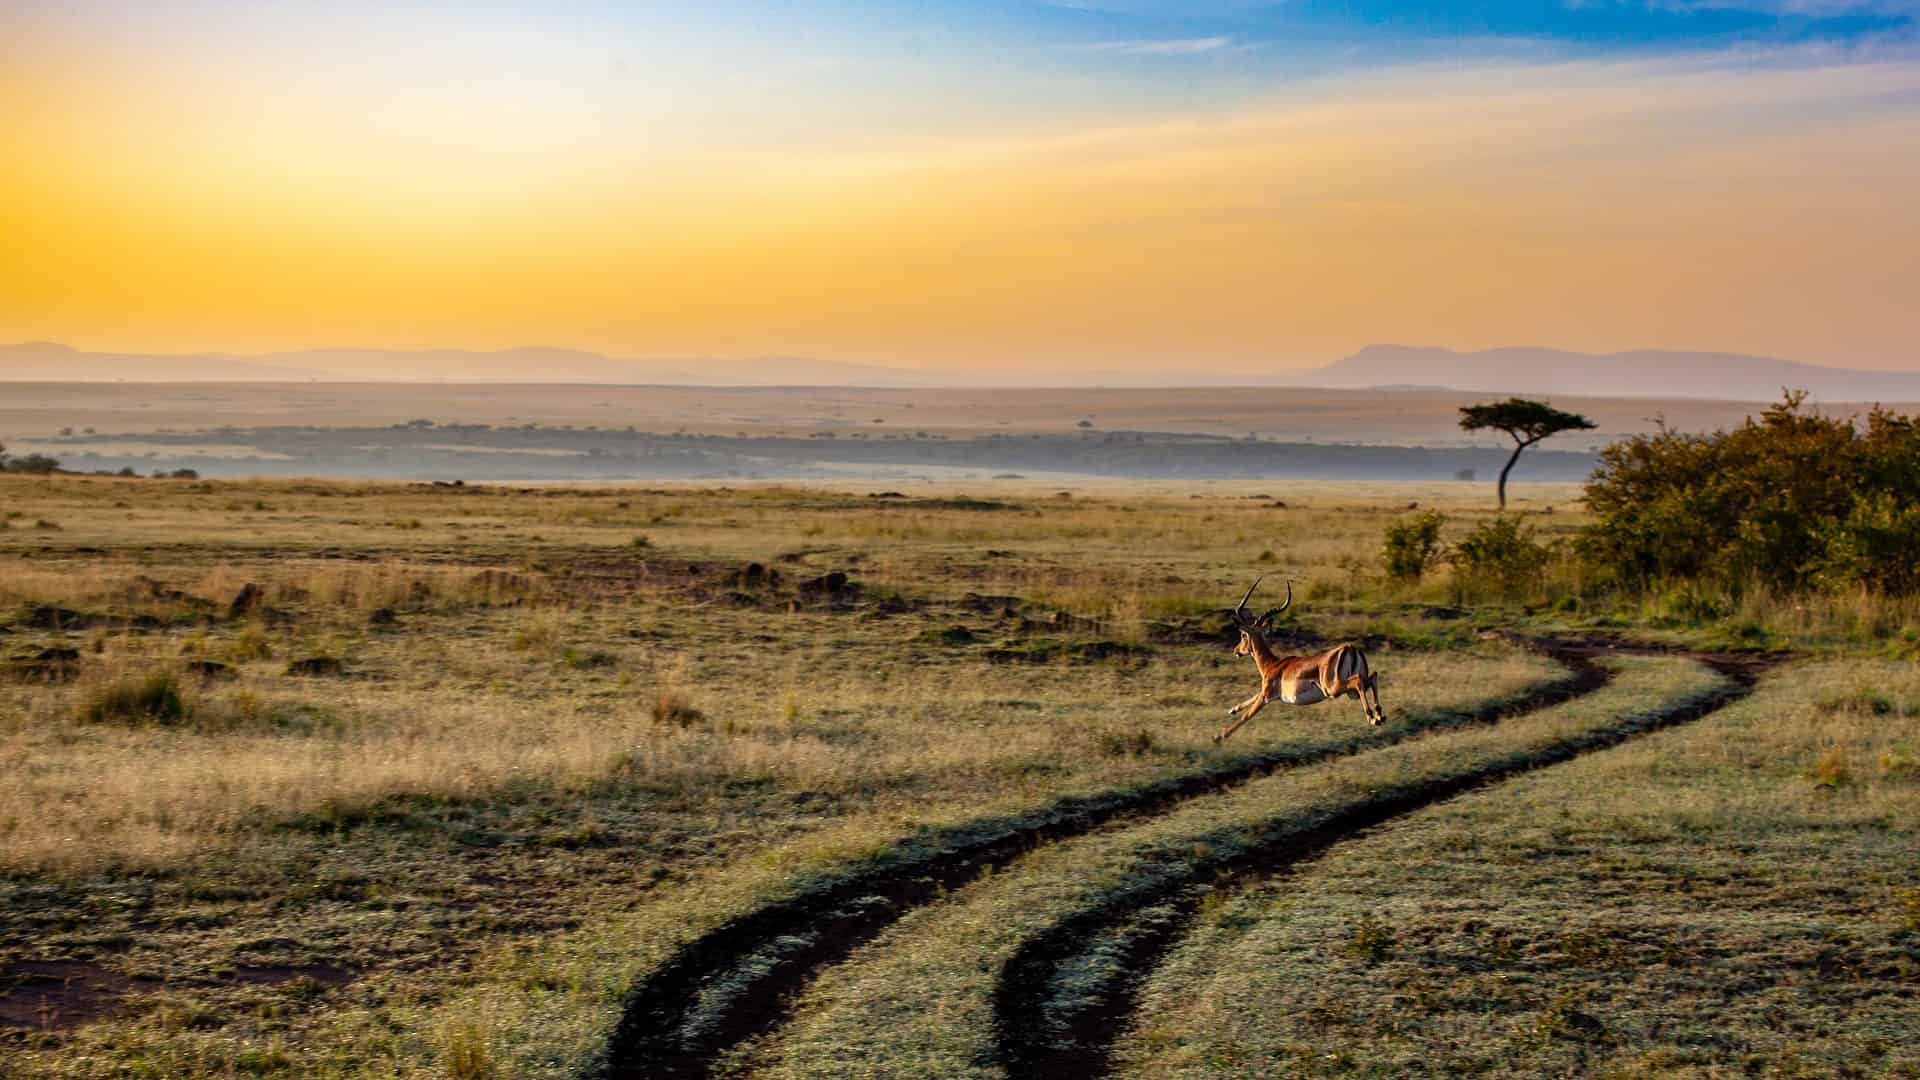 Antelope at sunset in Kenya.